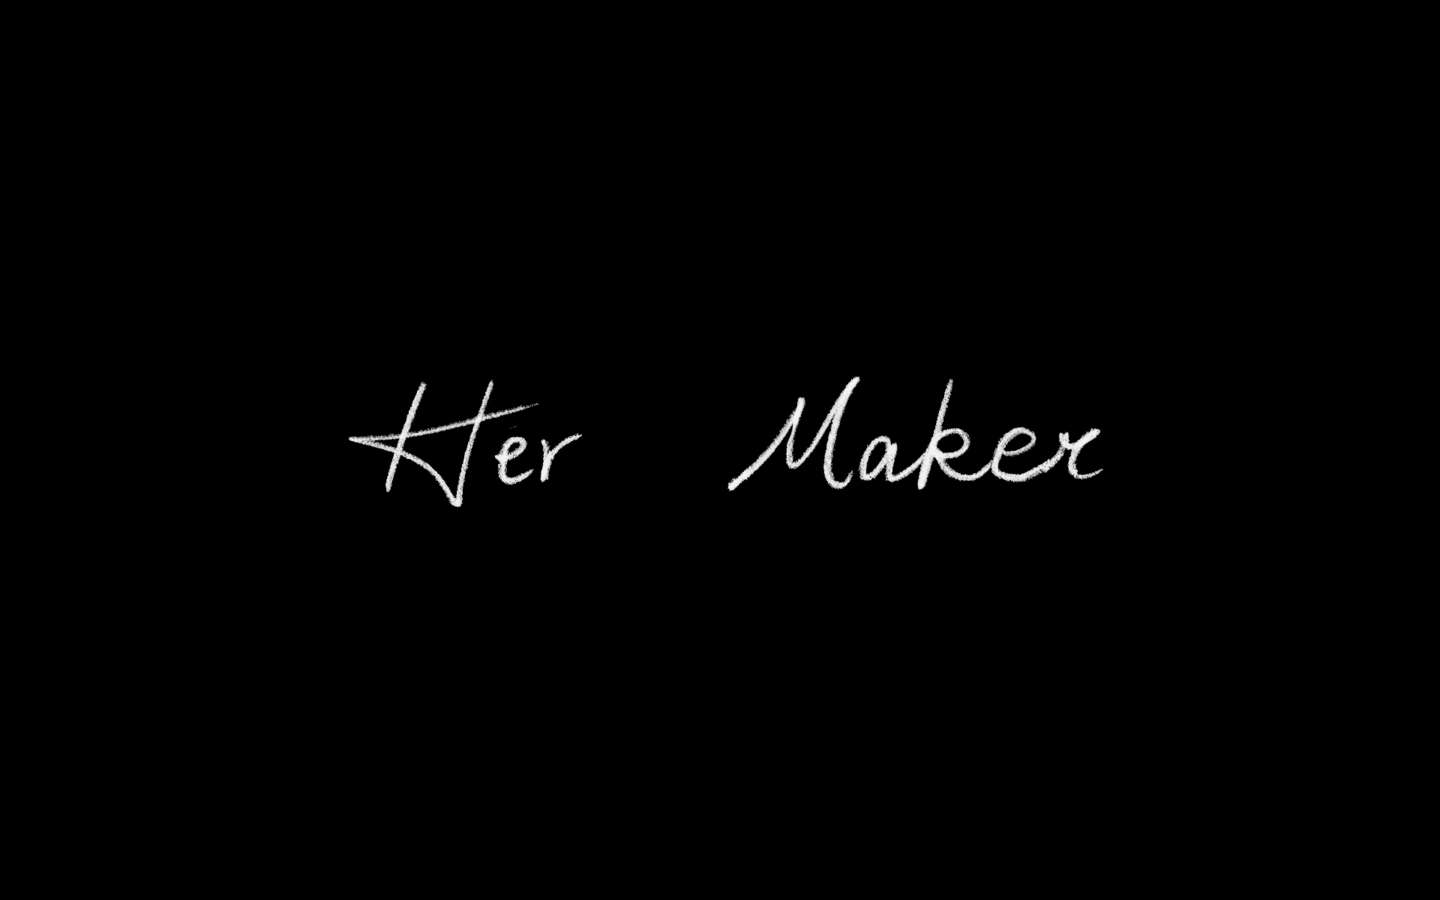 Her Maker